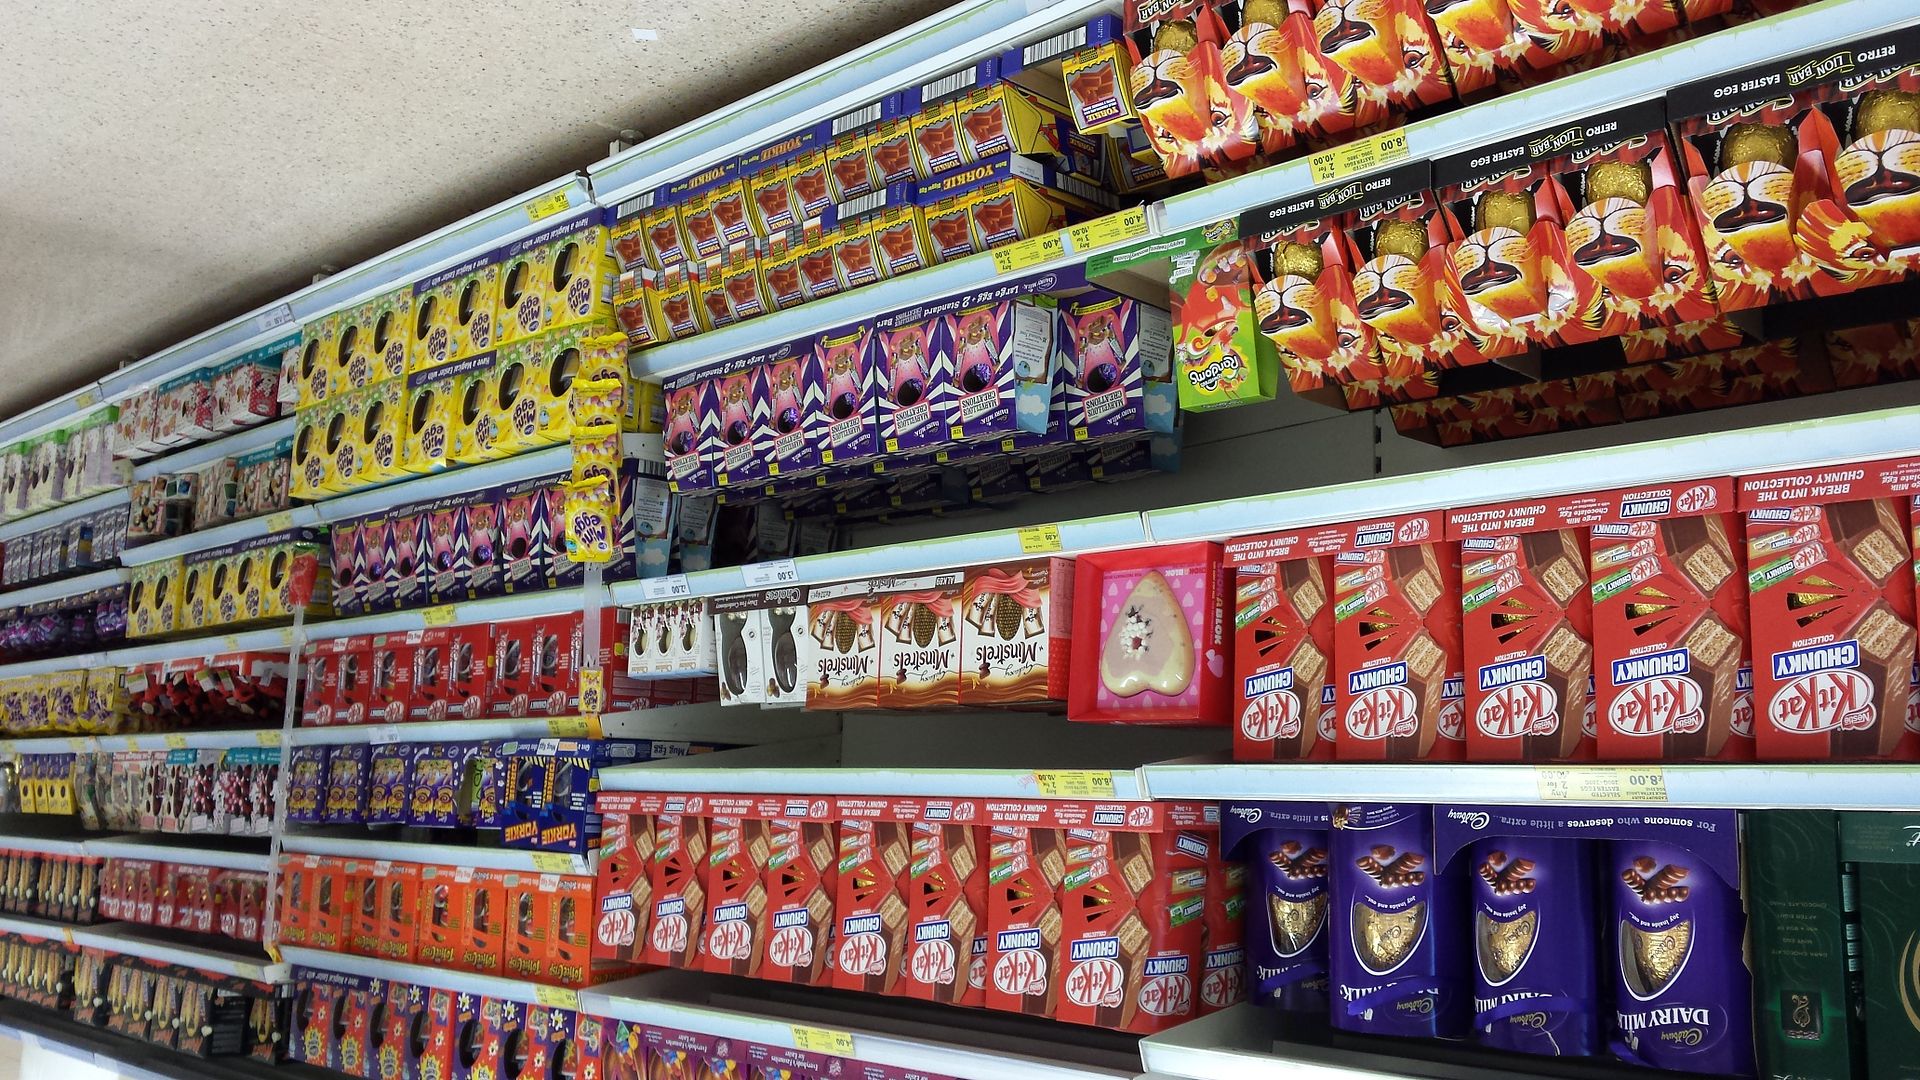  photo Easter-eggs-on-supermarket-shelves-2_zpso26h9miy.jpg